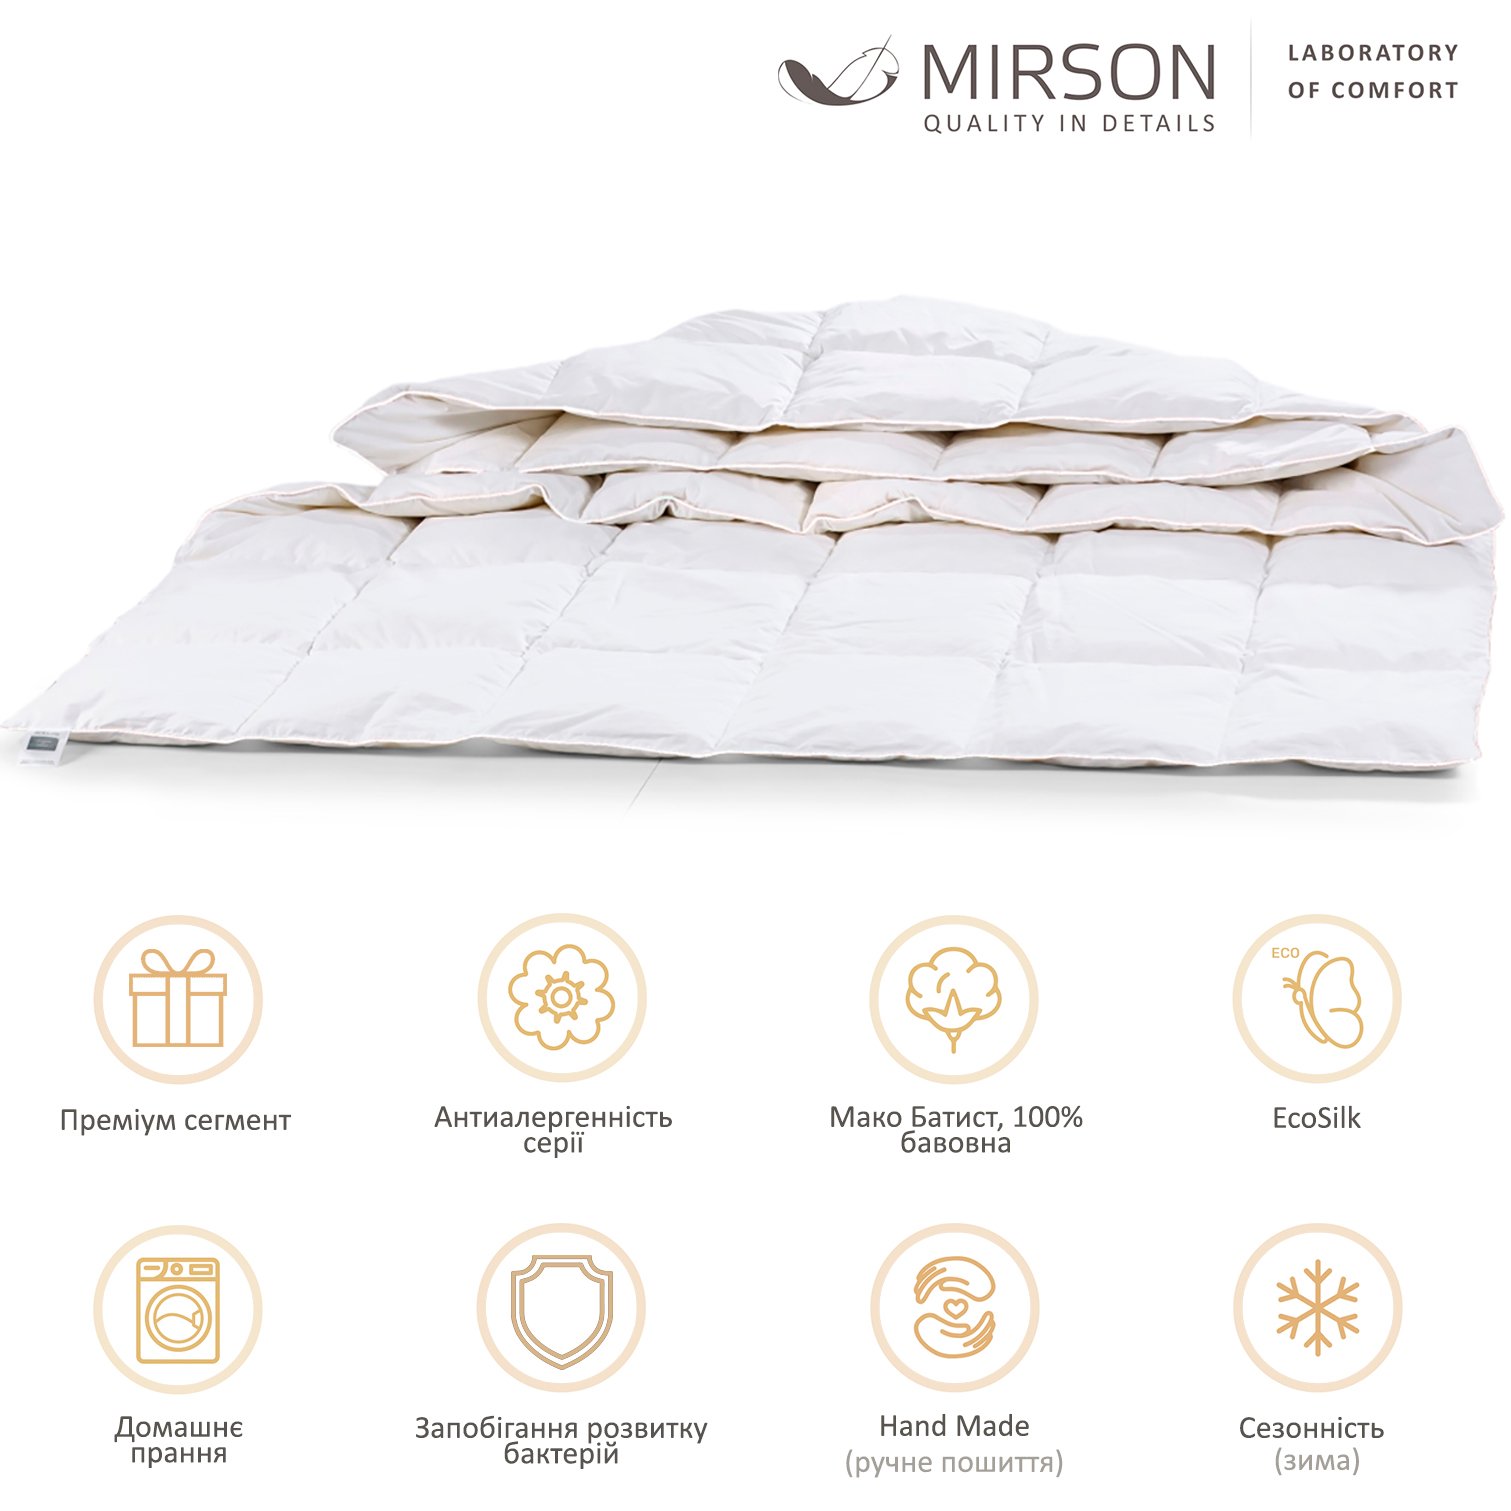 Одеяло антиаллергенное MirSon Luxury Exclusive EcoSilk №1317, зимнее, 155x215 см, белое (237054445) - фото 5